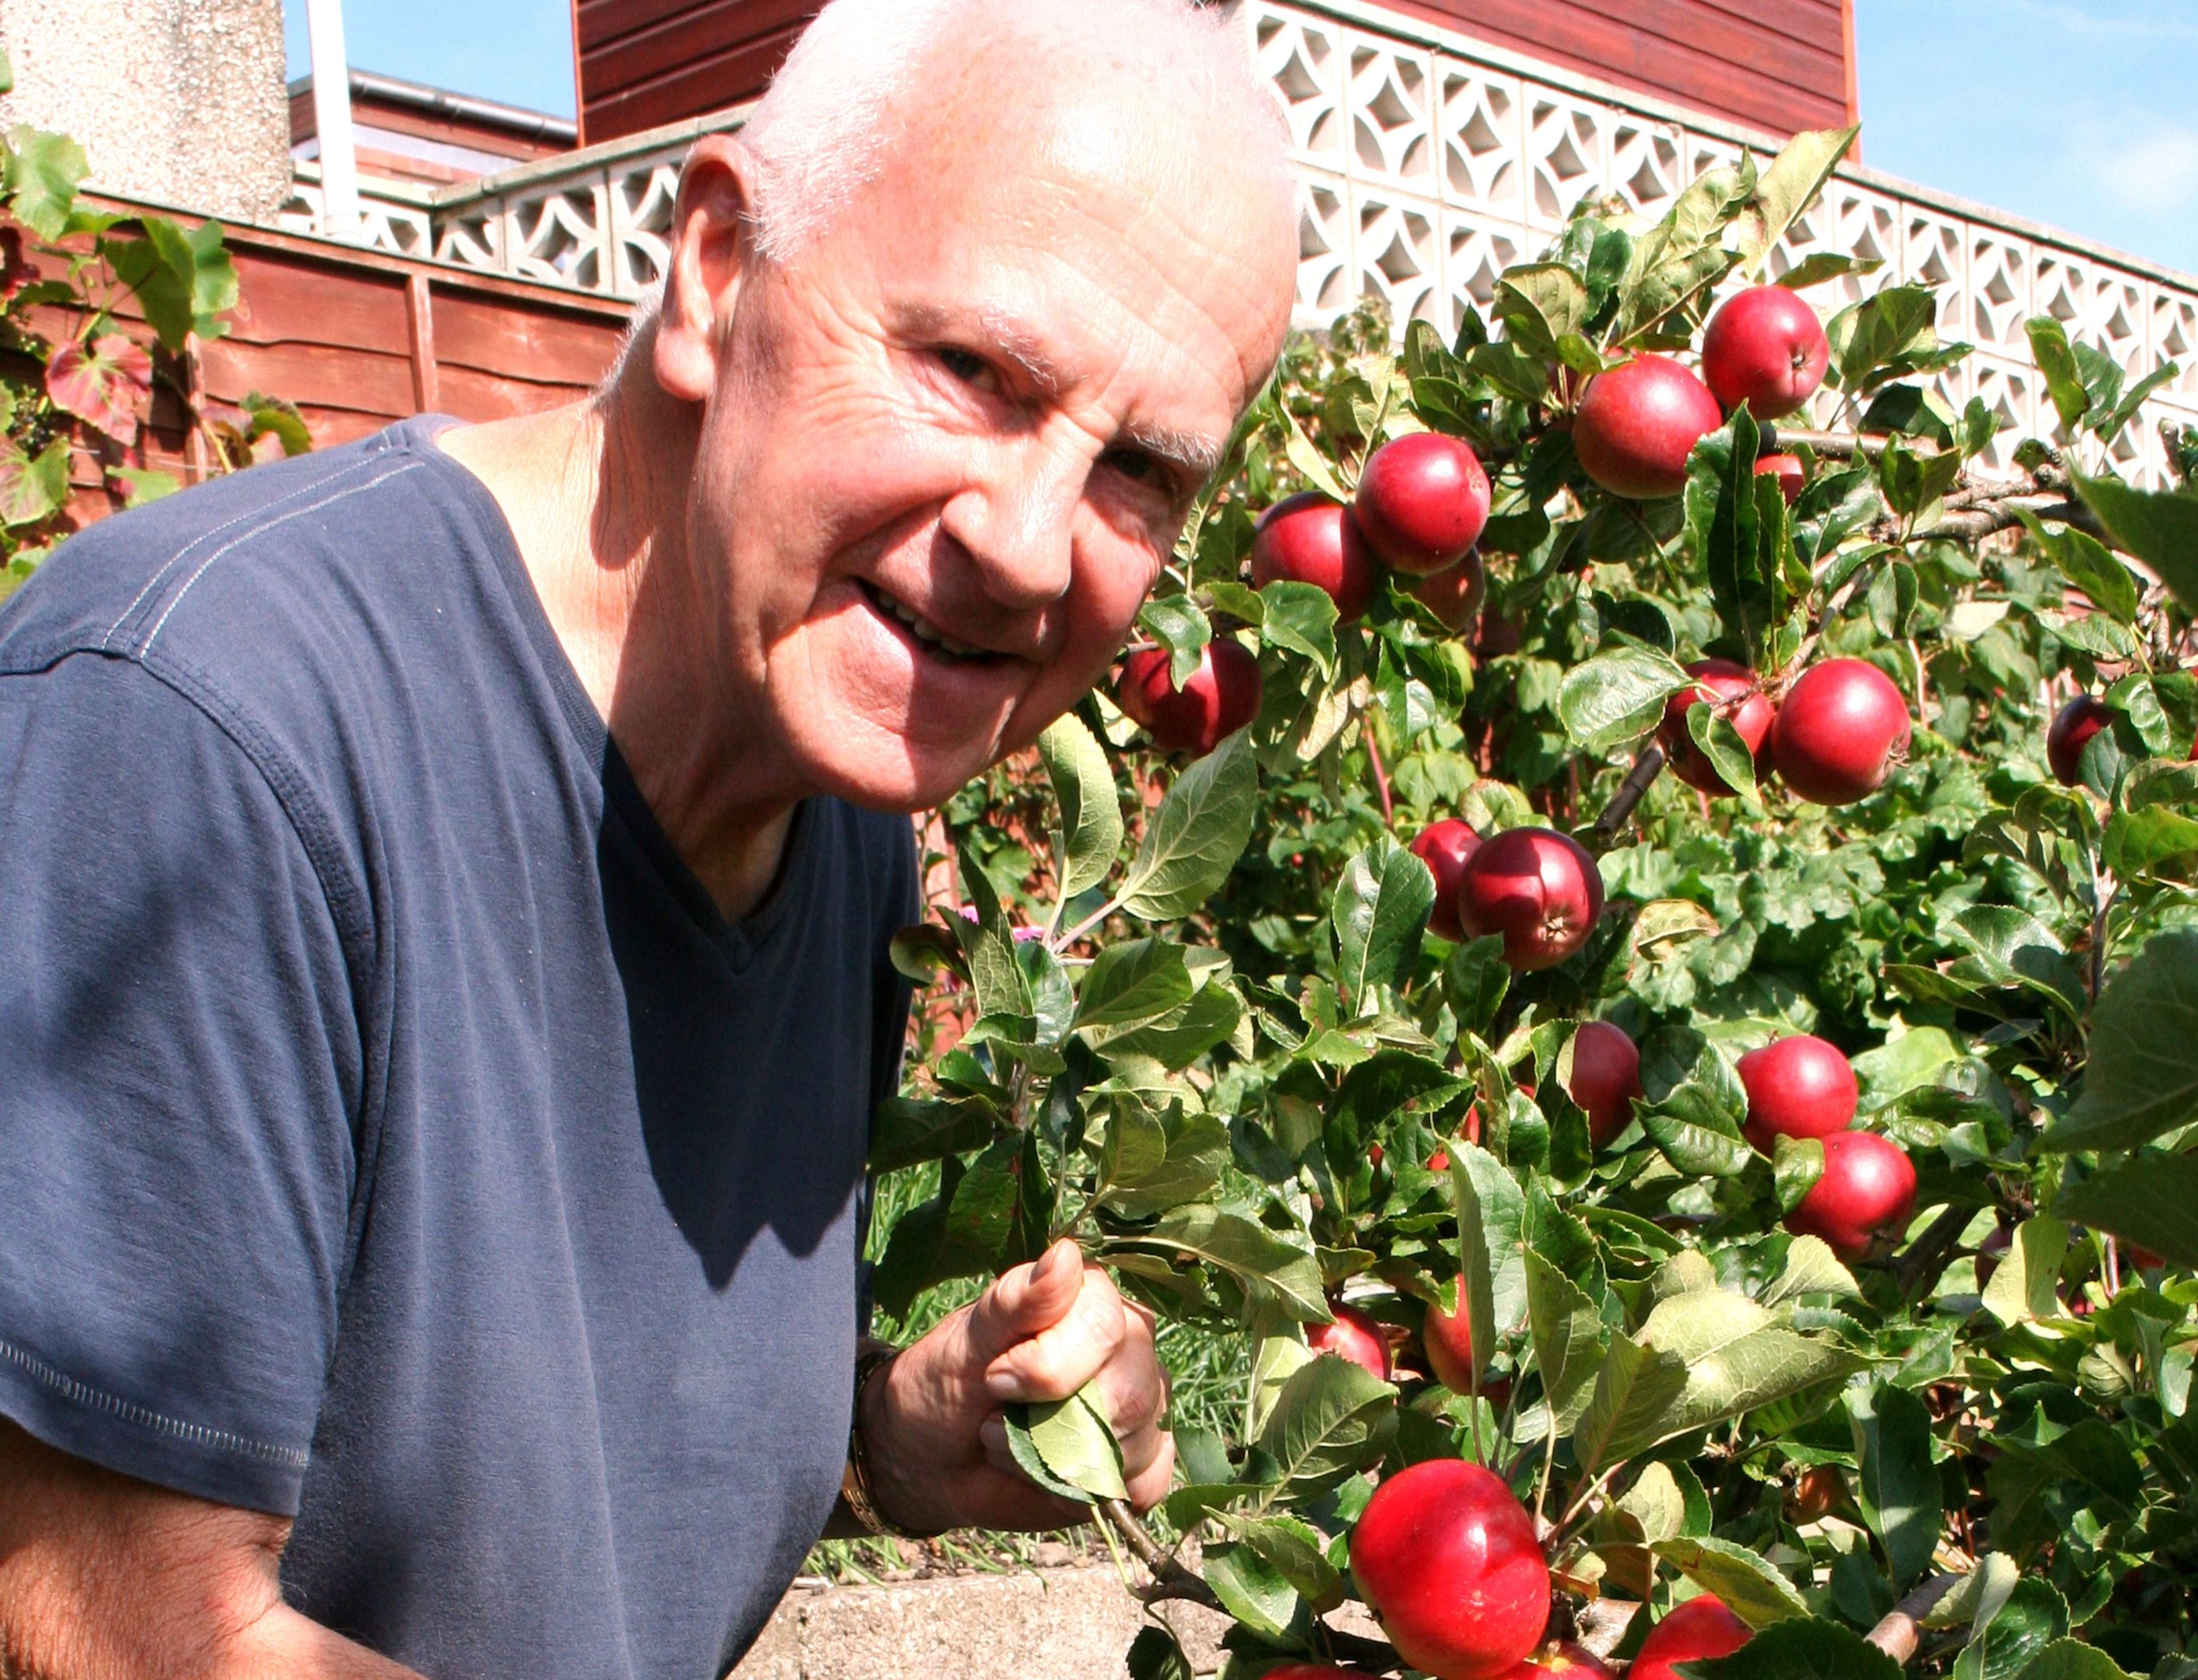 John picks early apples